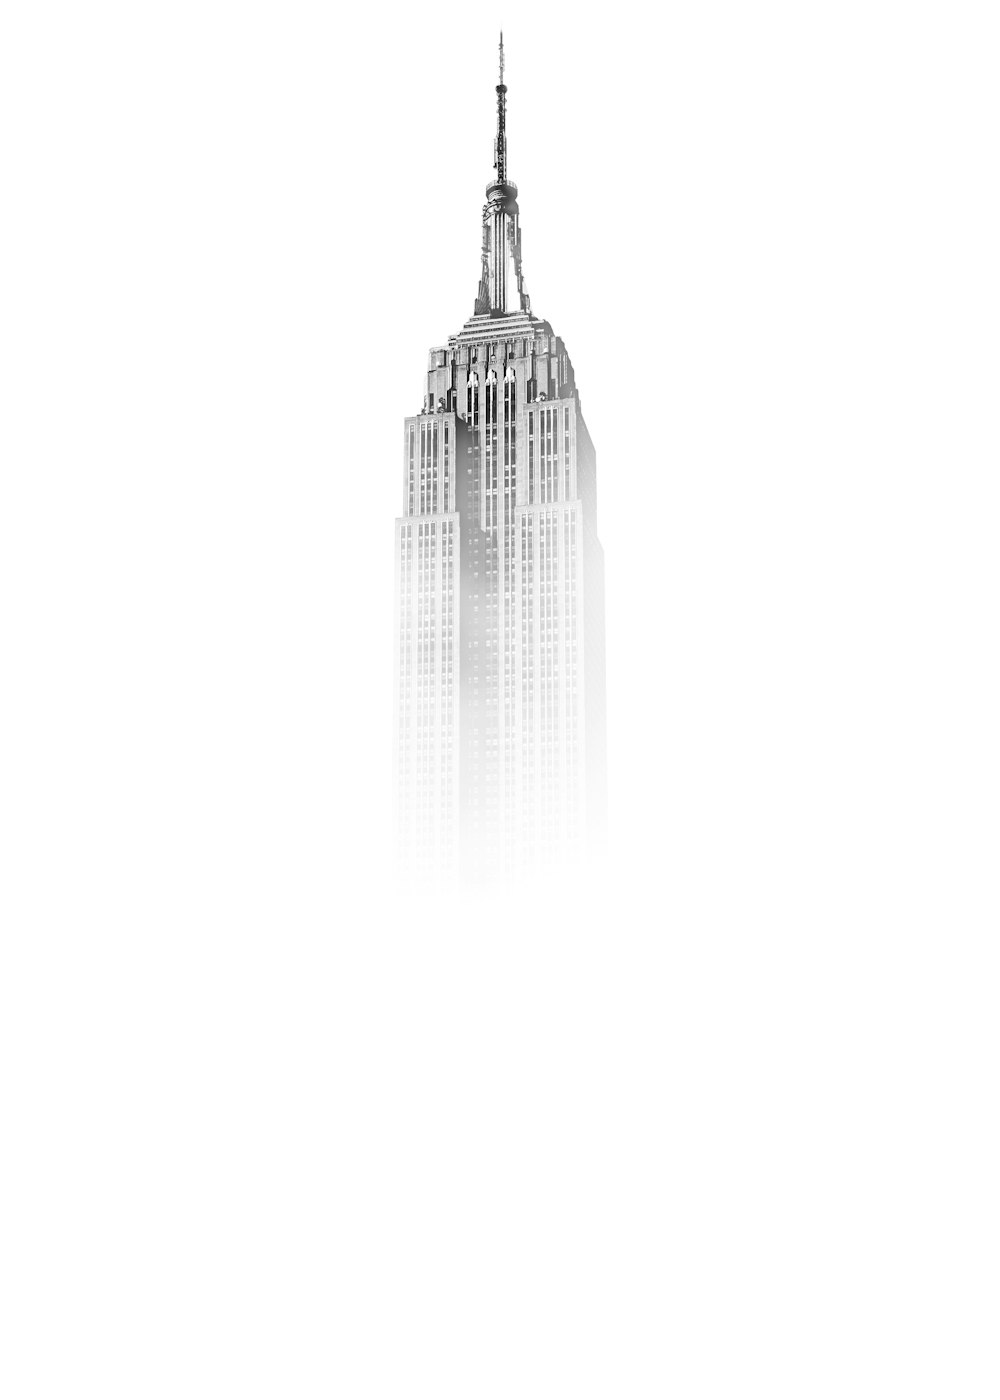 Skizze des Empire State Building